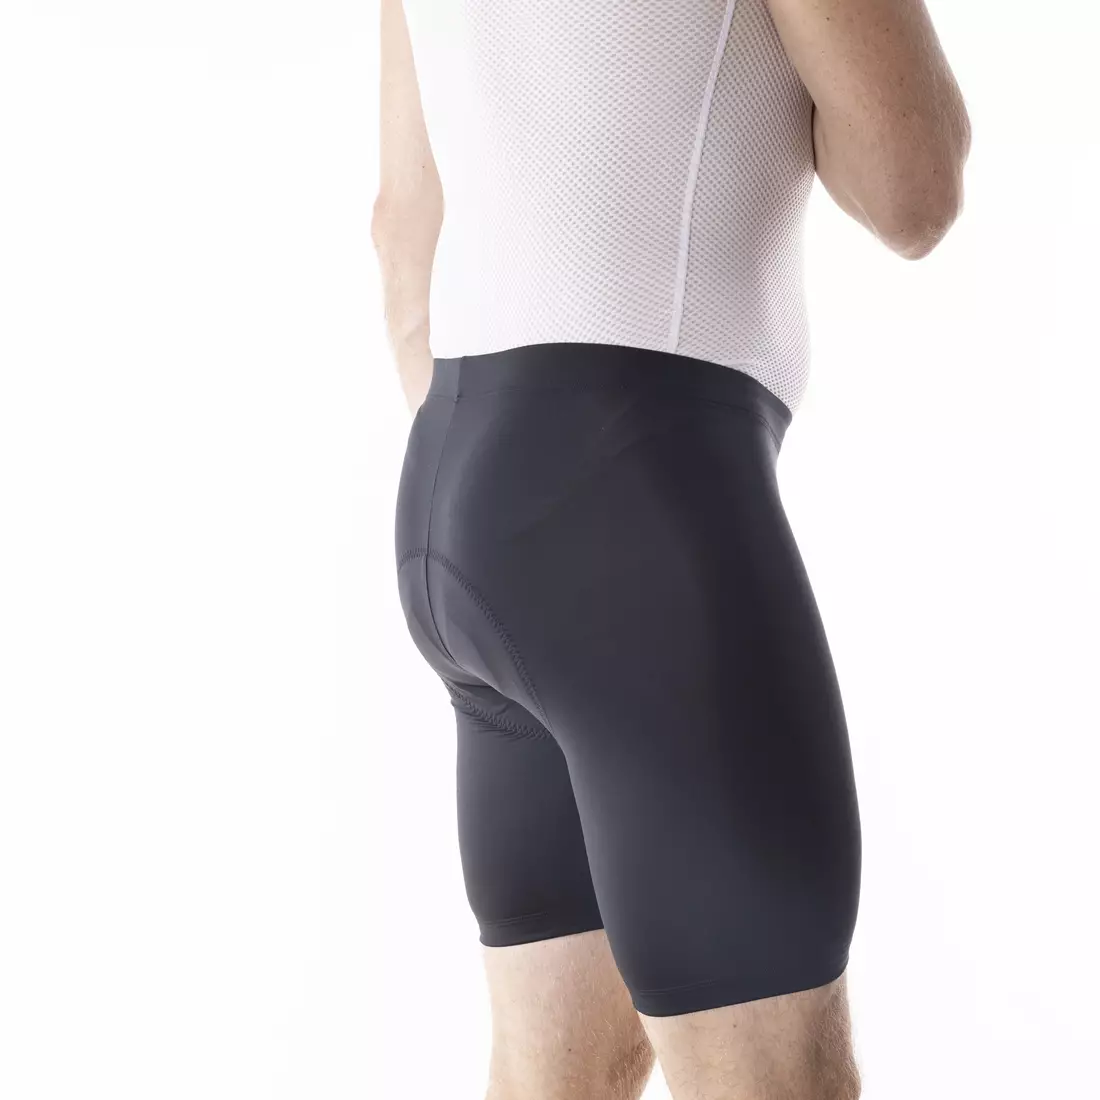 KAYMAQ ELBAS-100 Pantaloni scurti de ciclism pentru bărbați fără bretele, negri